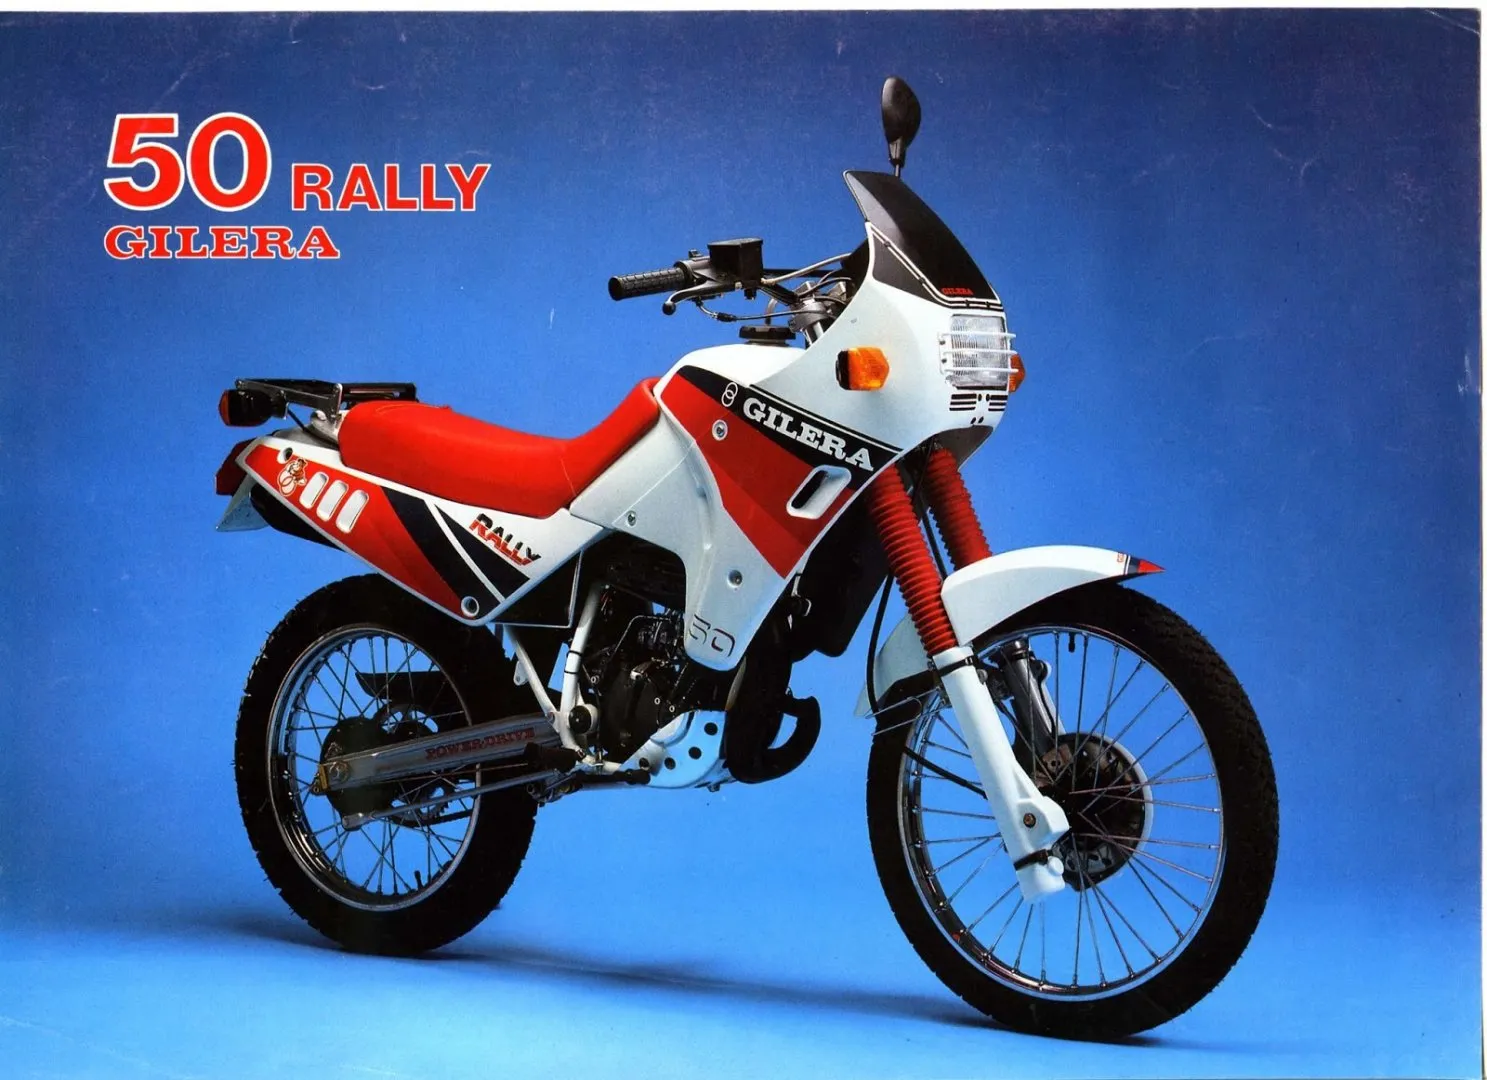 Moto del día: Gilera Rally 50